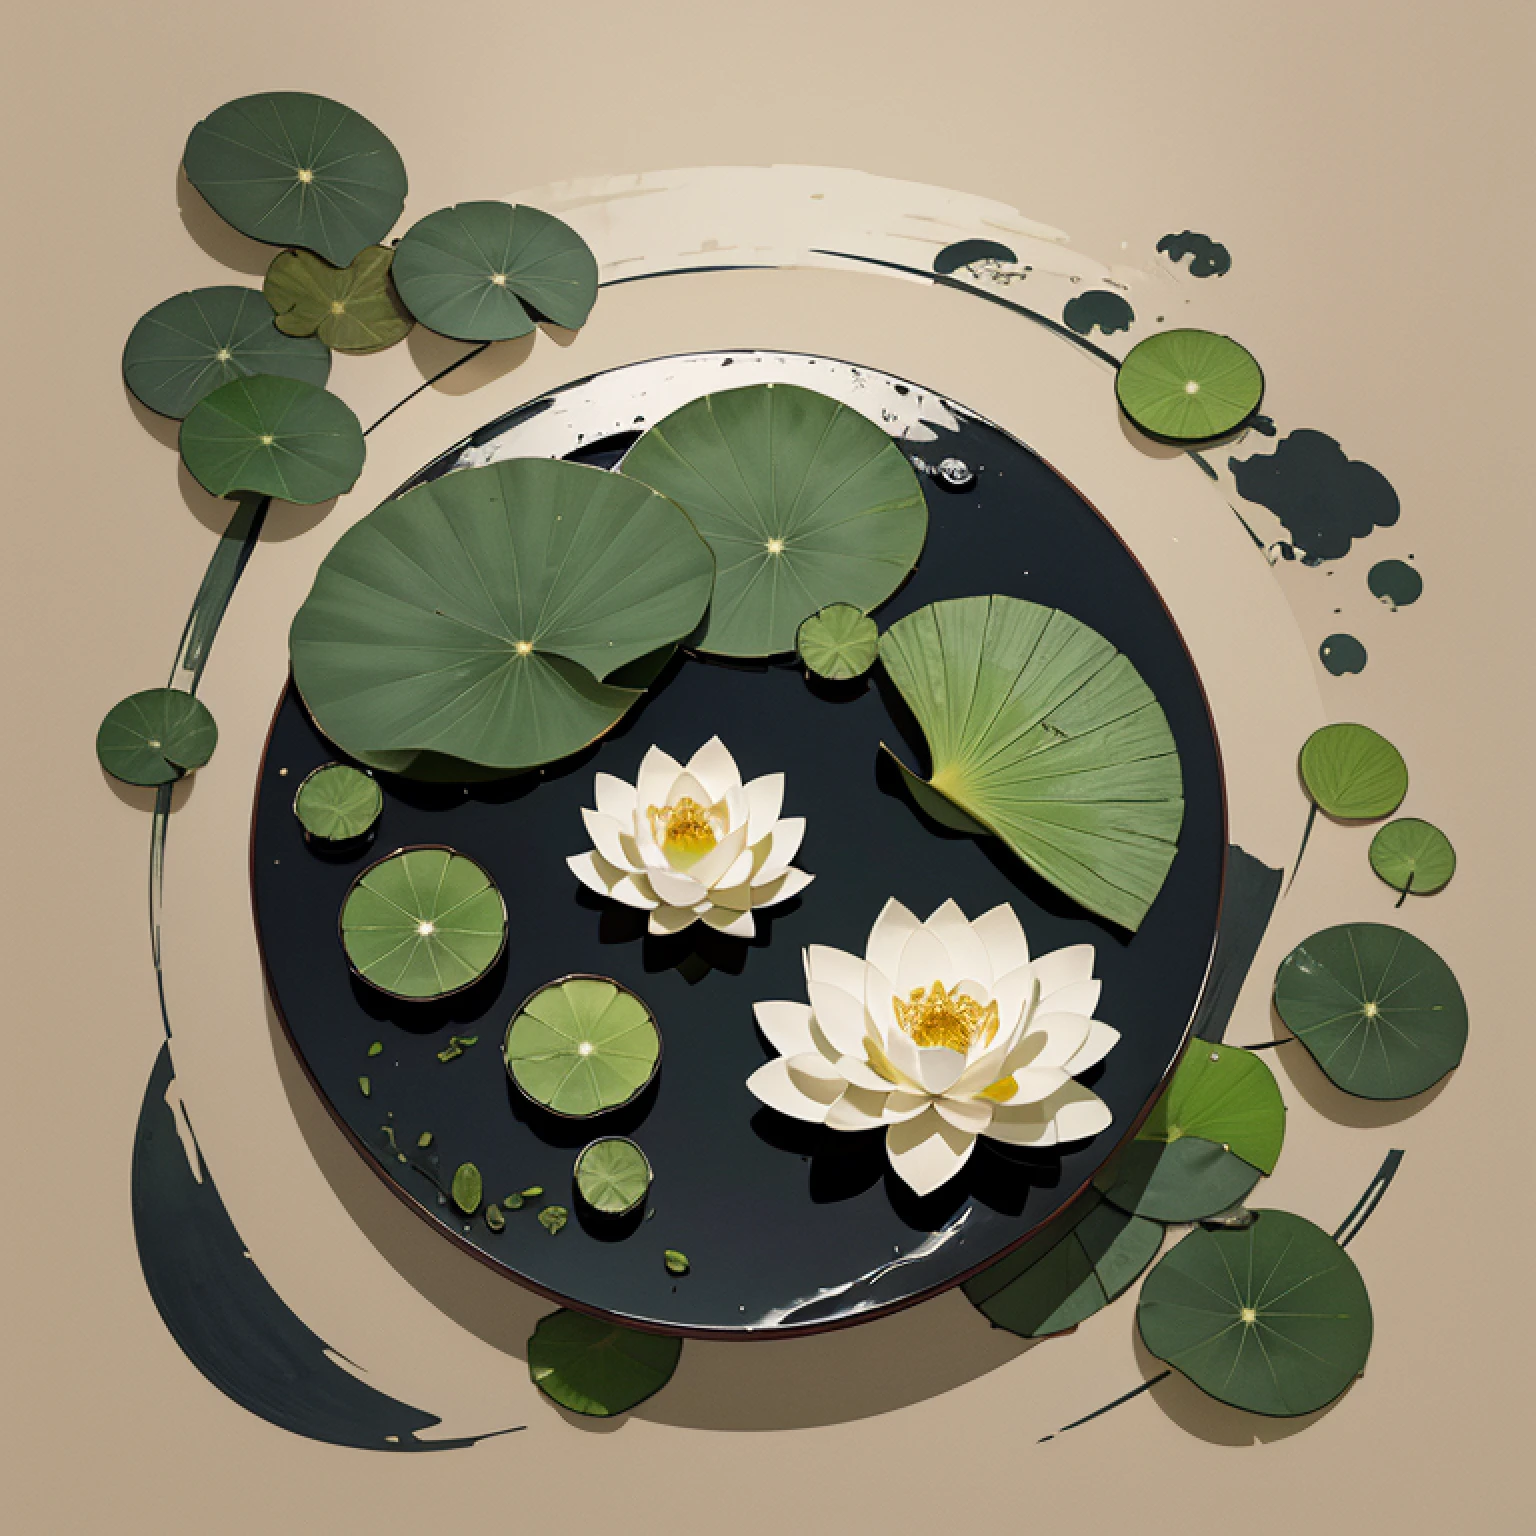 Traditionelle chinesische Tuschemalerei，Lotus blatt，Lotus Blume，Lassen Sie sich nicht charakterisieren，A lotus，Ein Lotusblatt，Meisterstück，beste Qualität，offizielle Kunst，ultra-detailliert，extrem detailliert，einfacher Hintergrund